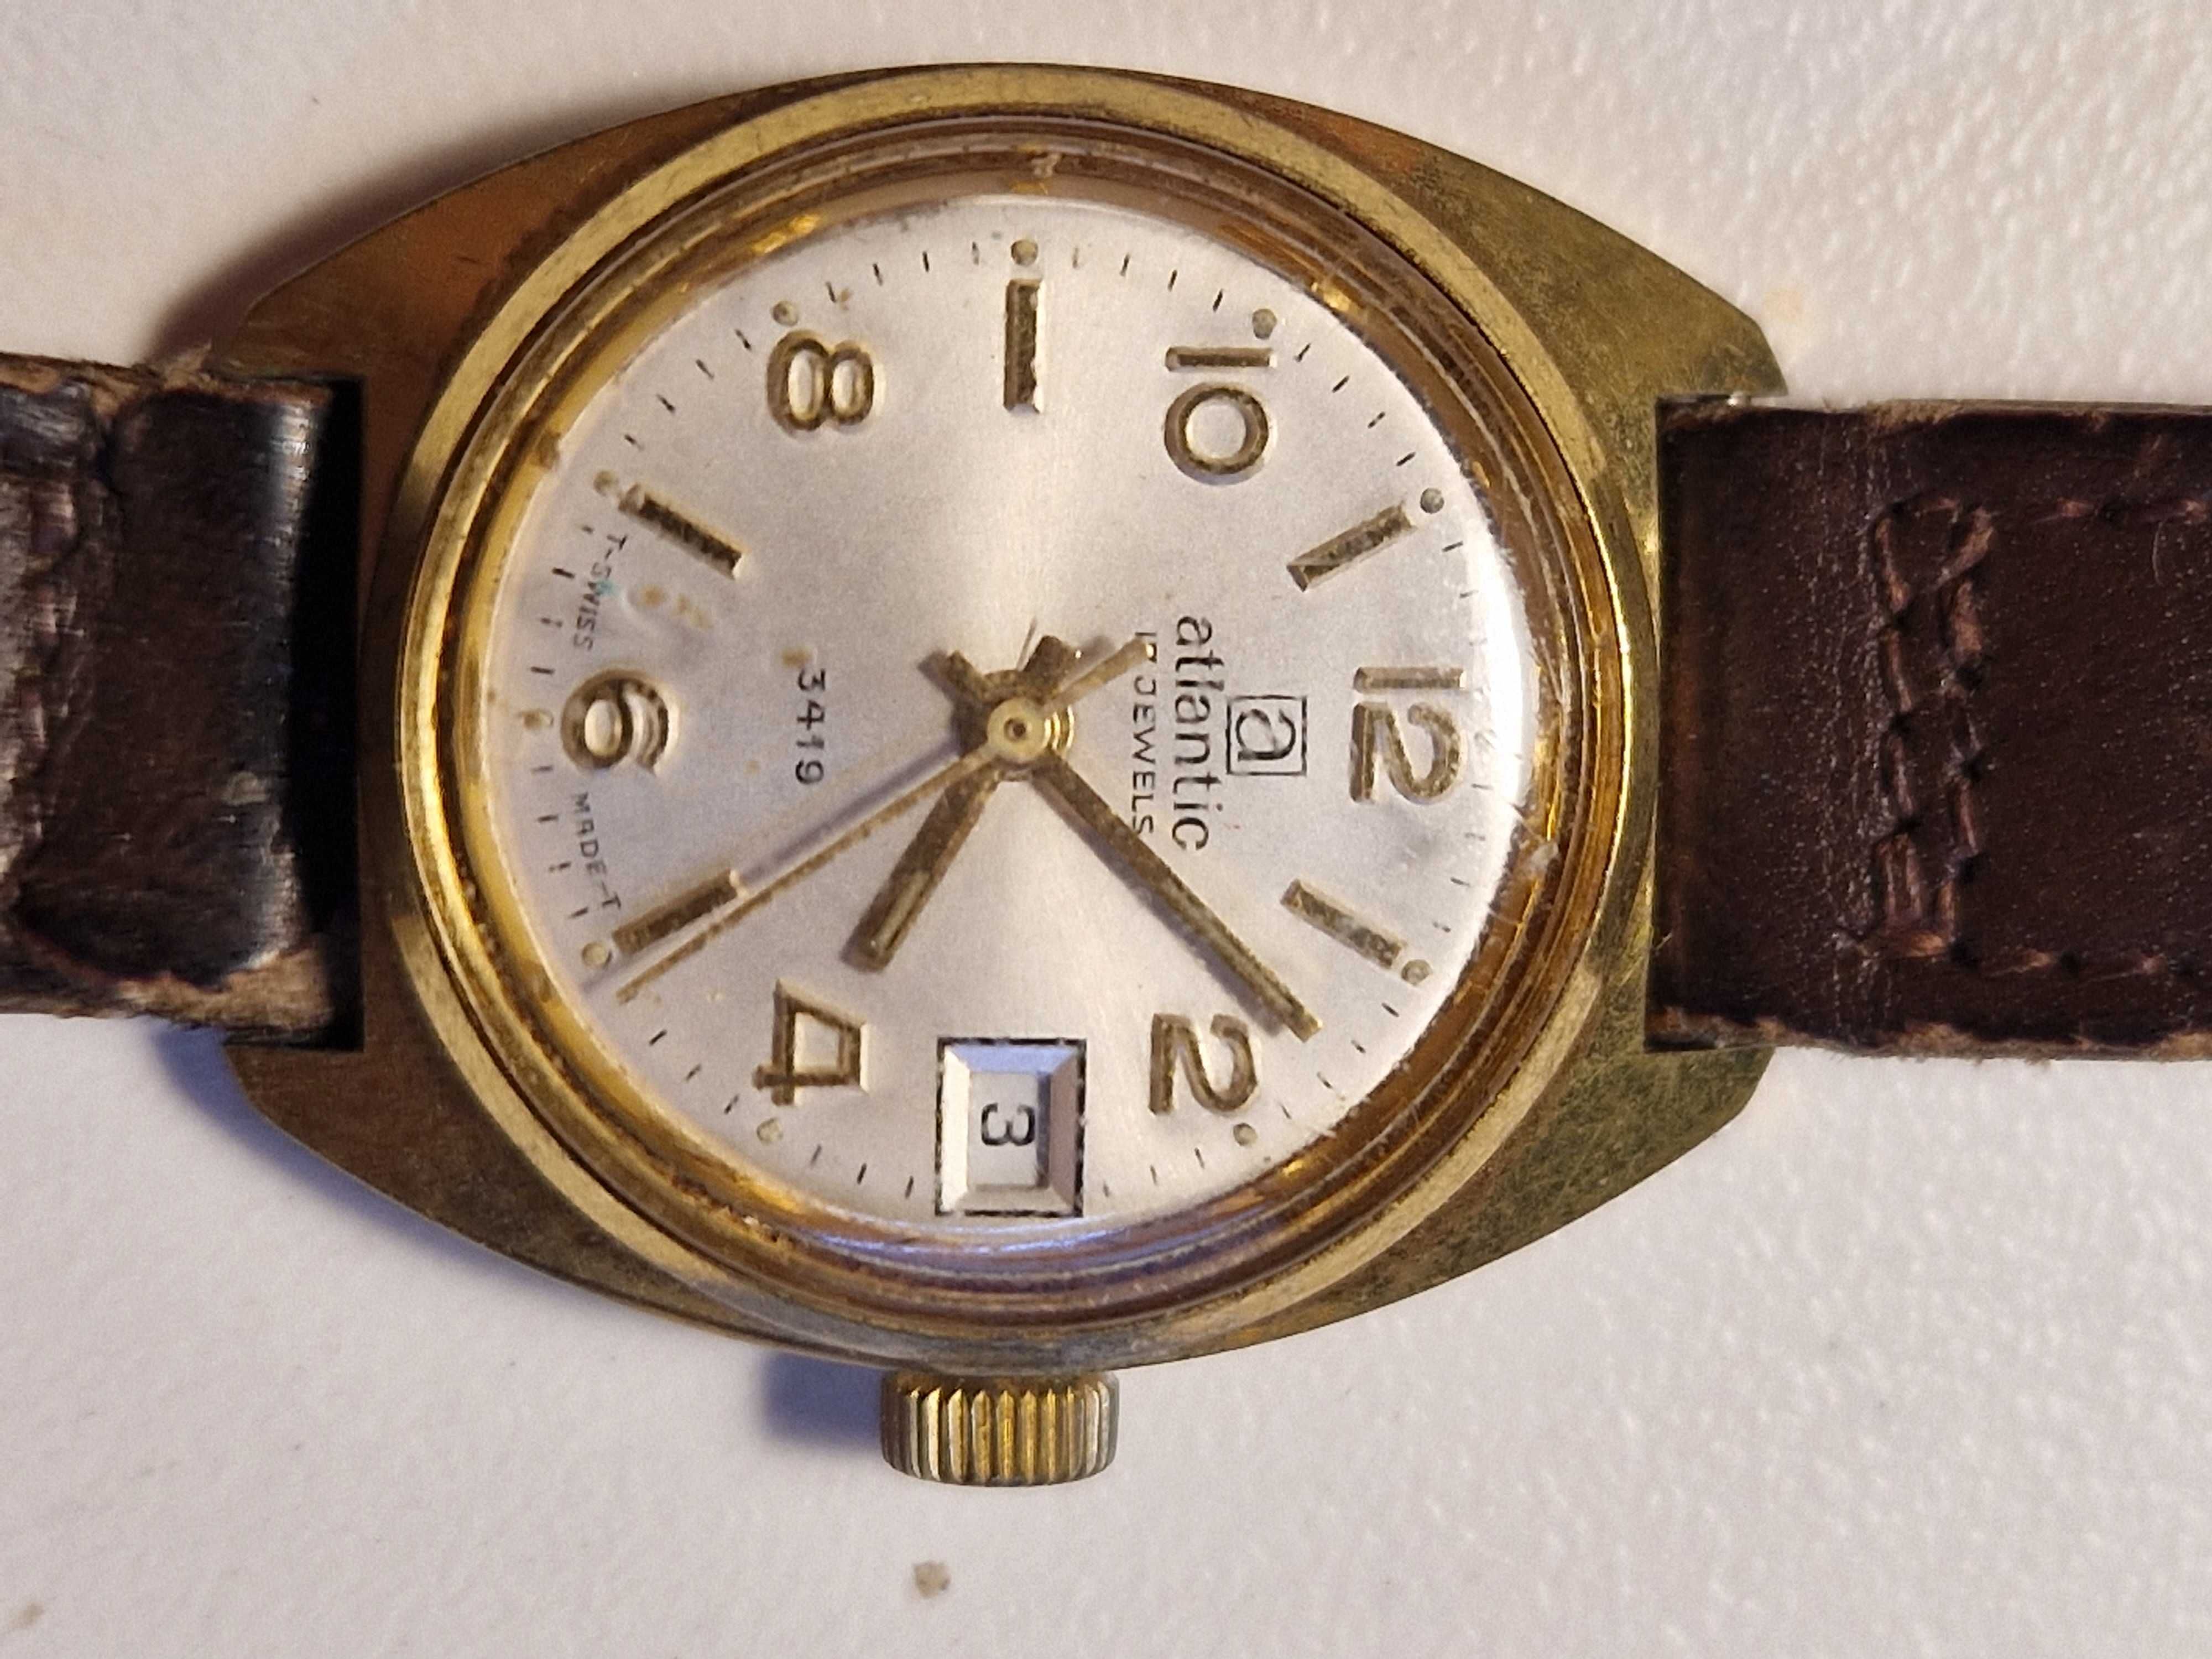 Zegarek Atlantic damski 3419 z lat 50-tych XX wieku